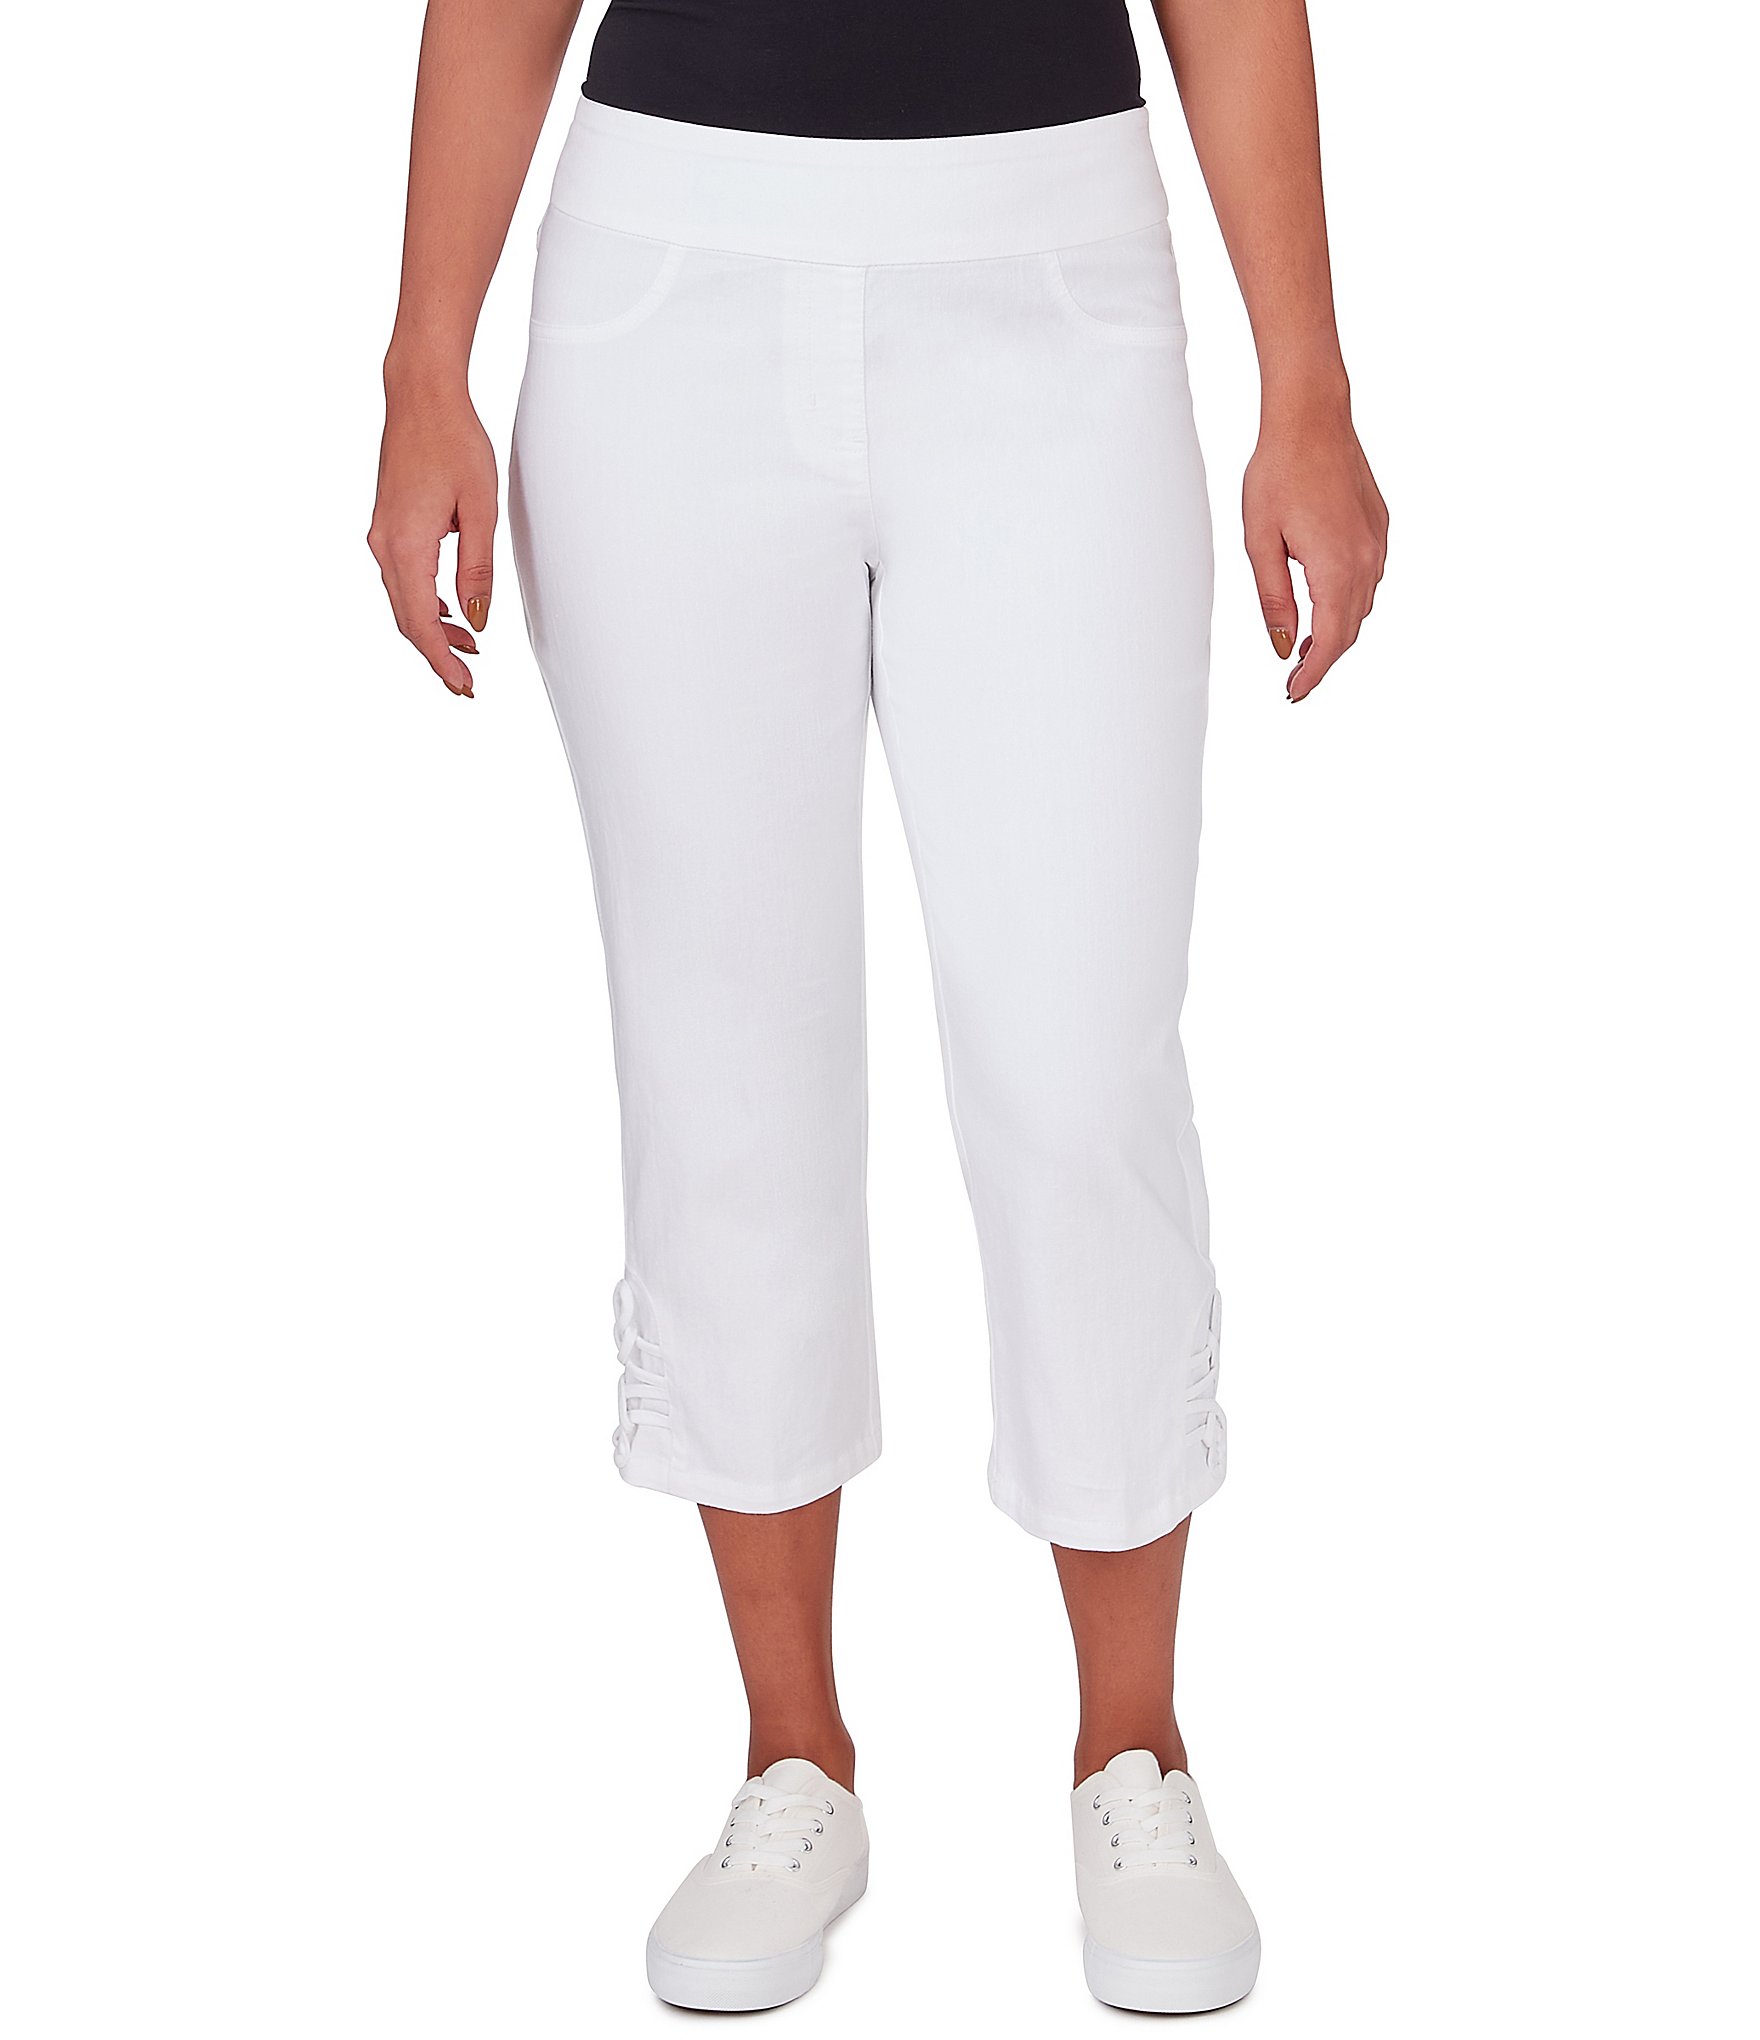 NWT BODEN WOMEN'S White Straight Leg Capri Pants Wm315 US Size 10 P *